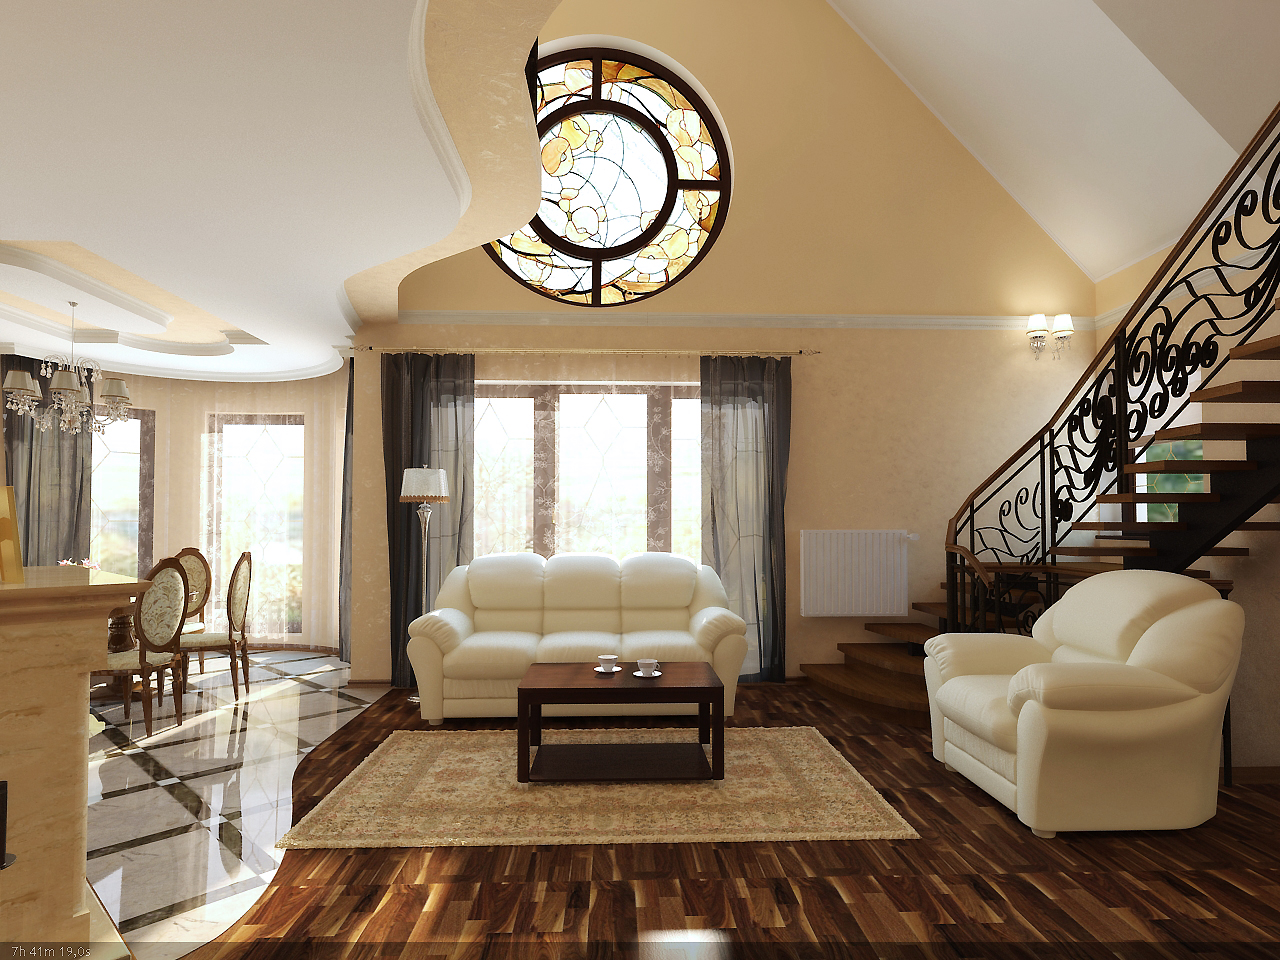 Home Interior Design Style